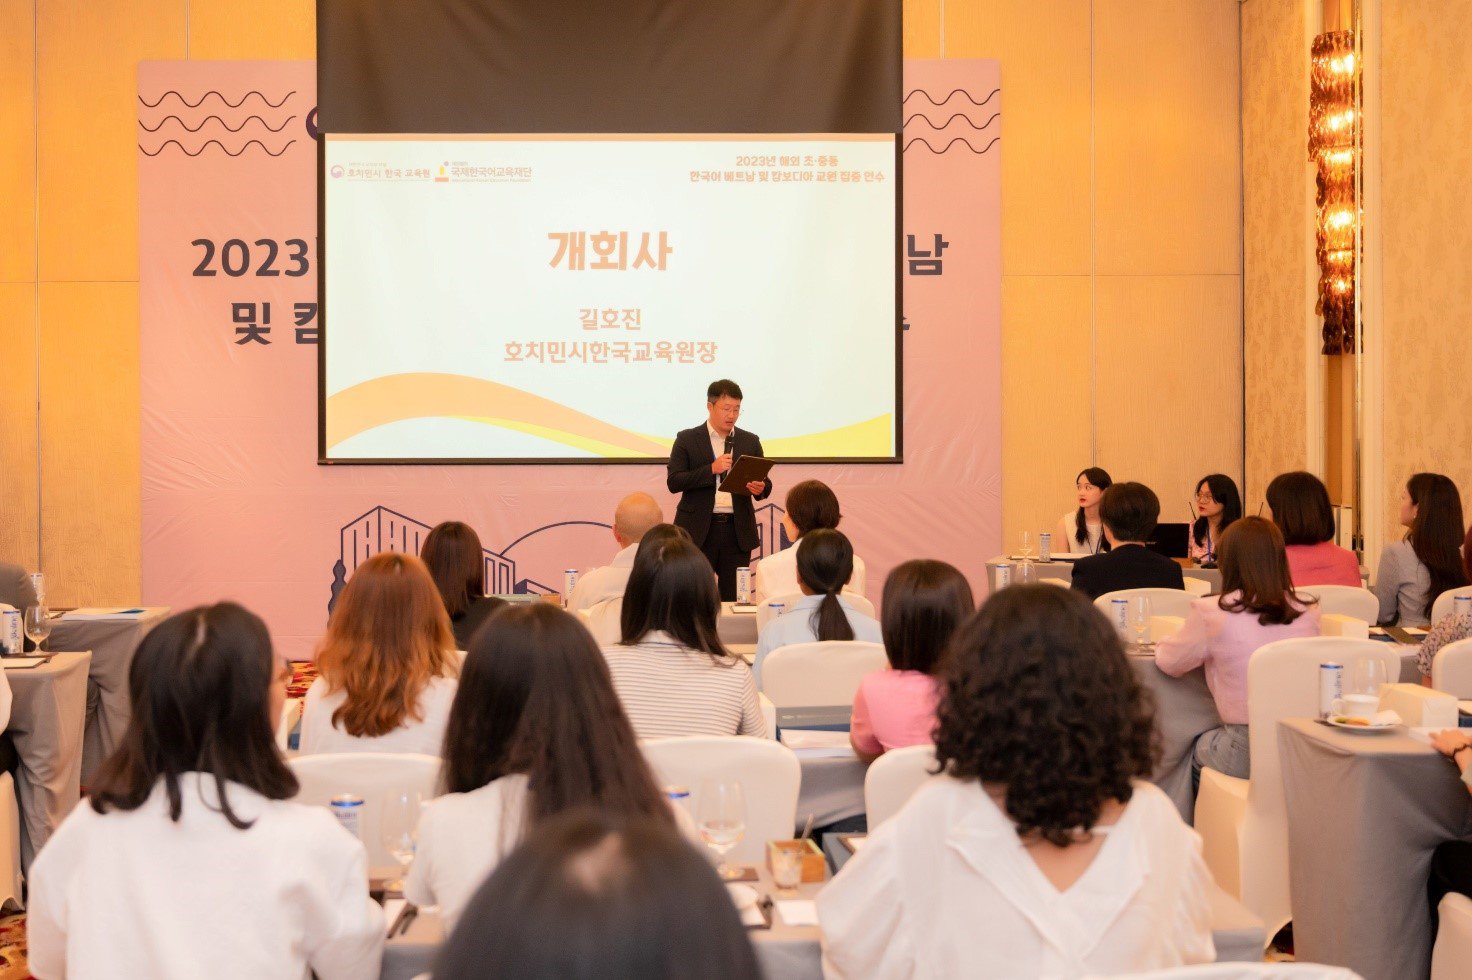 Tổ chức khóa đào tạo về giảng dạy và đánh giá chuyên sâu dành cho giáo viên tiếng Hàn năm 2023 - 1